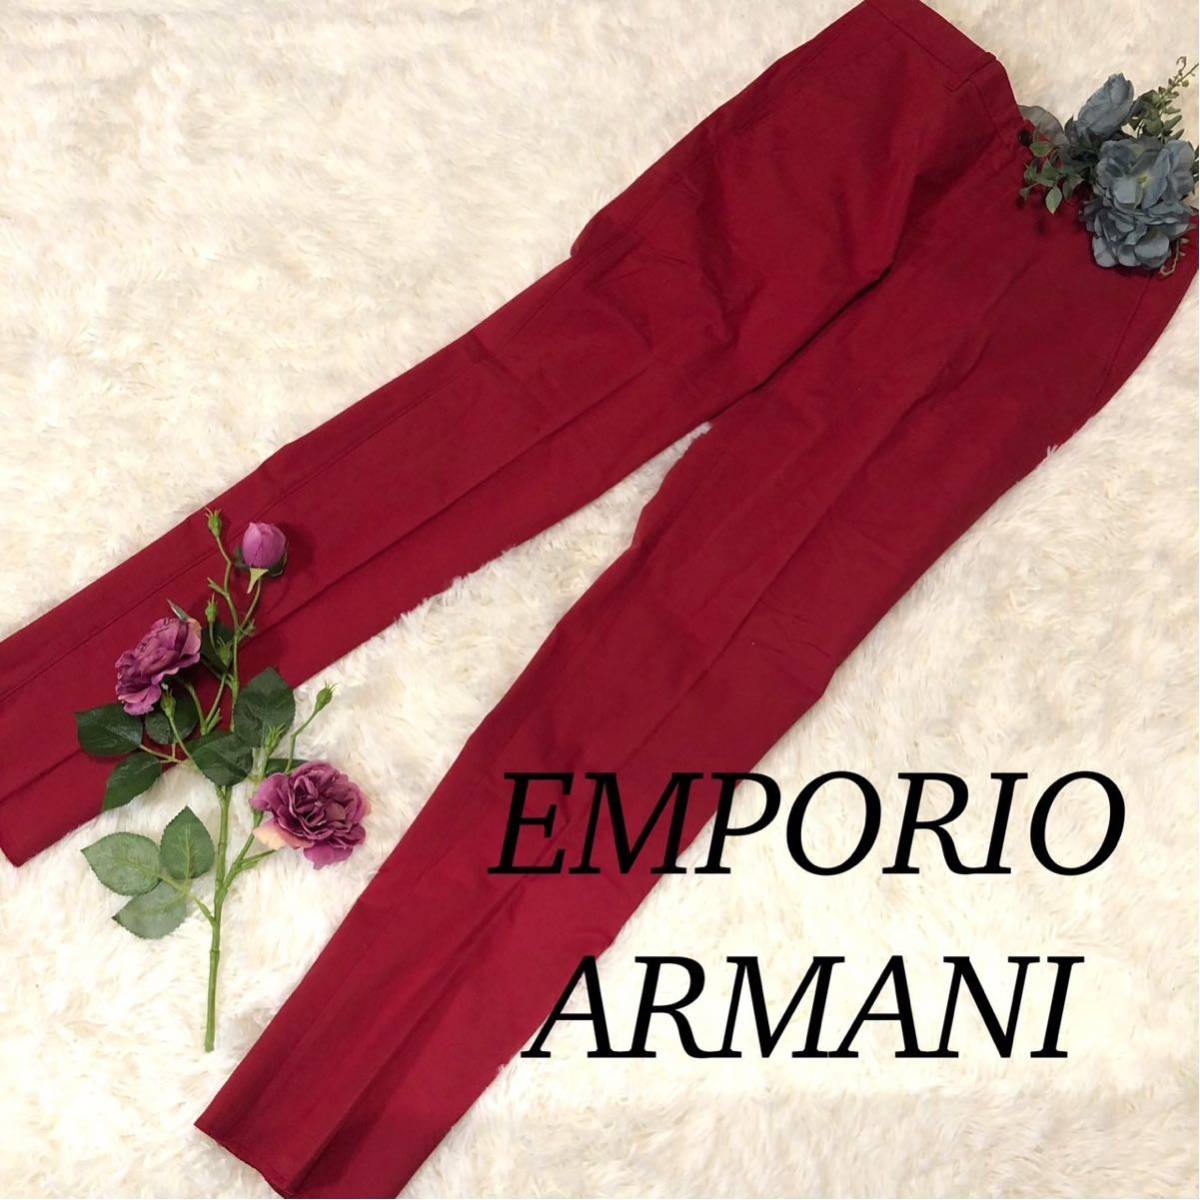 EMPORIOARMANI エンポリオアルマーニ ARMANI アルマーニ メンズ 男性 パンツ ボトムス レッド 派手 個性的 サイズ48 Mサイズ_画像1